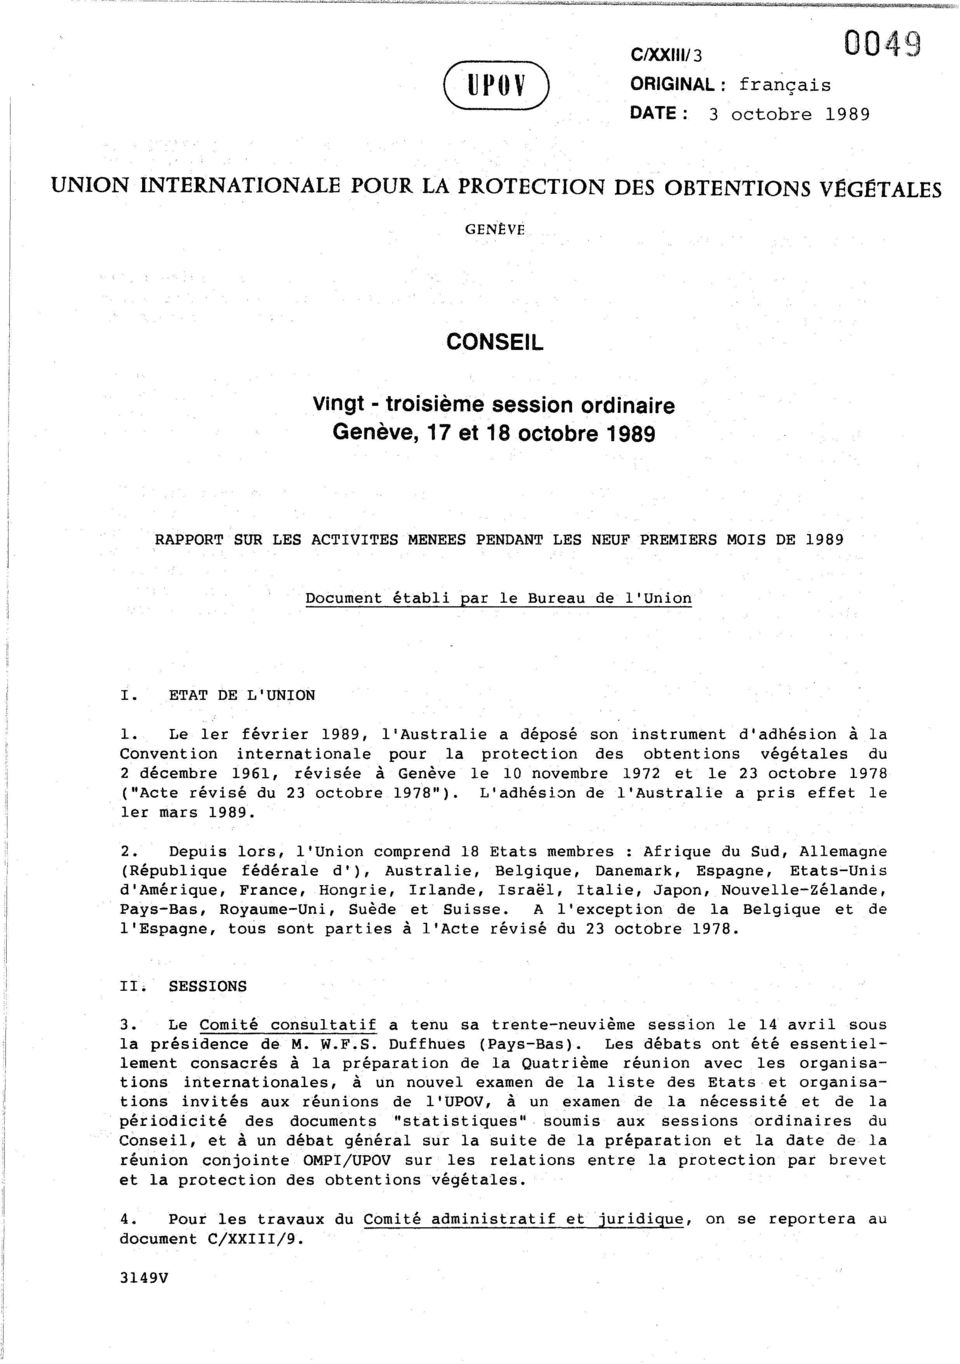 Le ler fevrier 1989, l'australie a depose son instrument d'adhesion a la Convention internationale pour la protection des obtentions vegetales du 2 decembre 1961, revlsee a Geneve Ie 10 novembre 1972